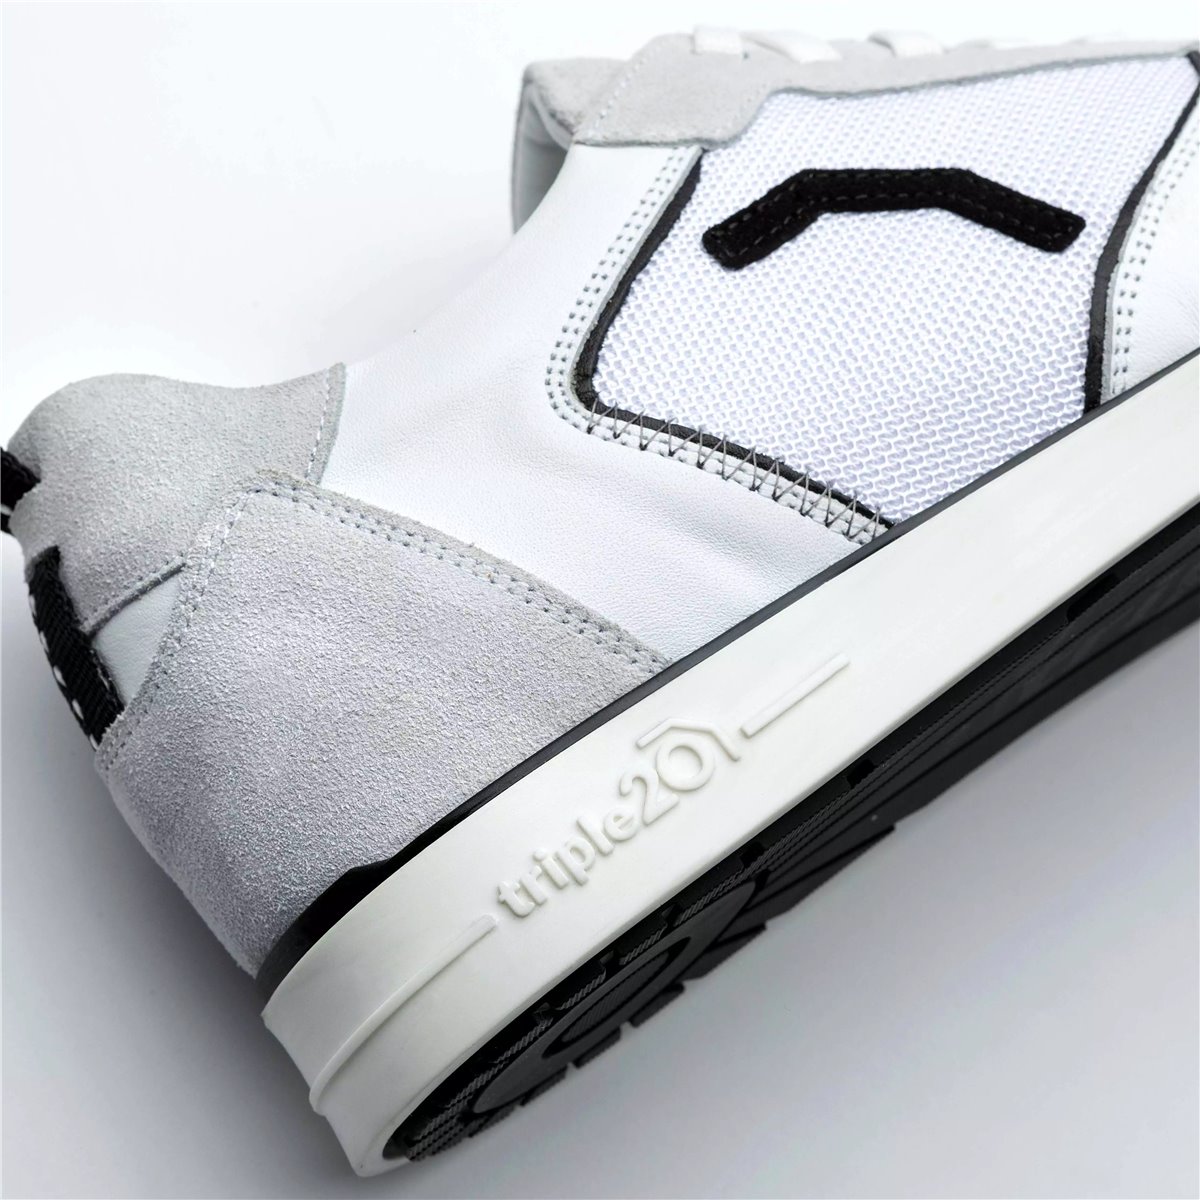 Triple20 Dartschuhe Textil Leder Weiß Schwarz Dartschuh